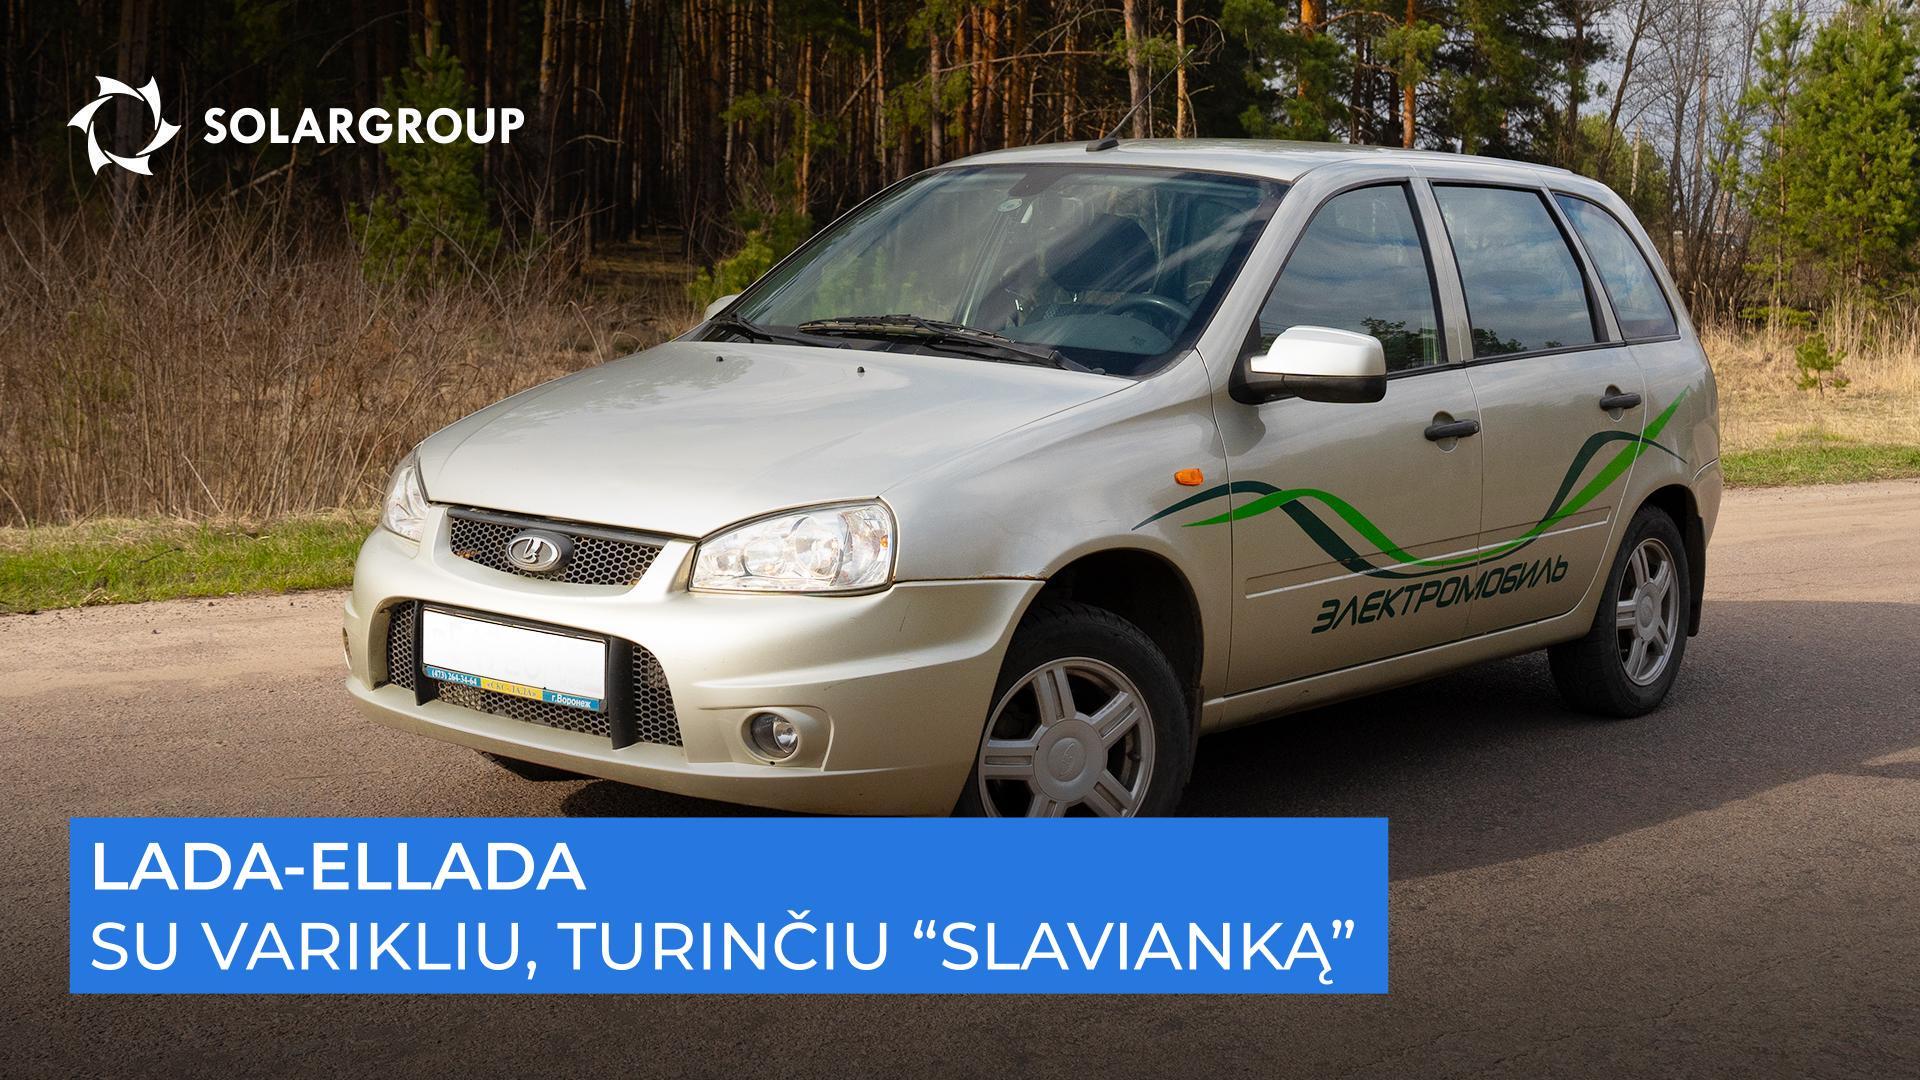 Greitas, tylus ir ištvermingas: ką parodė elektromobilio su „Slavianka“ važiavimo testai?